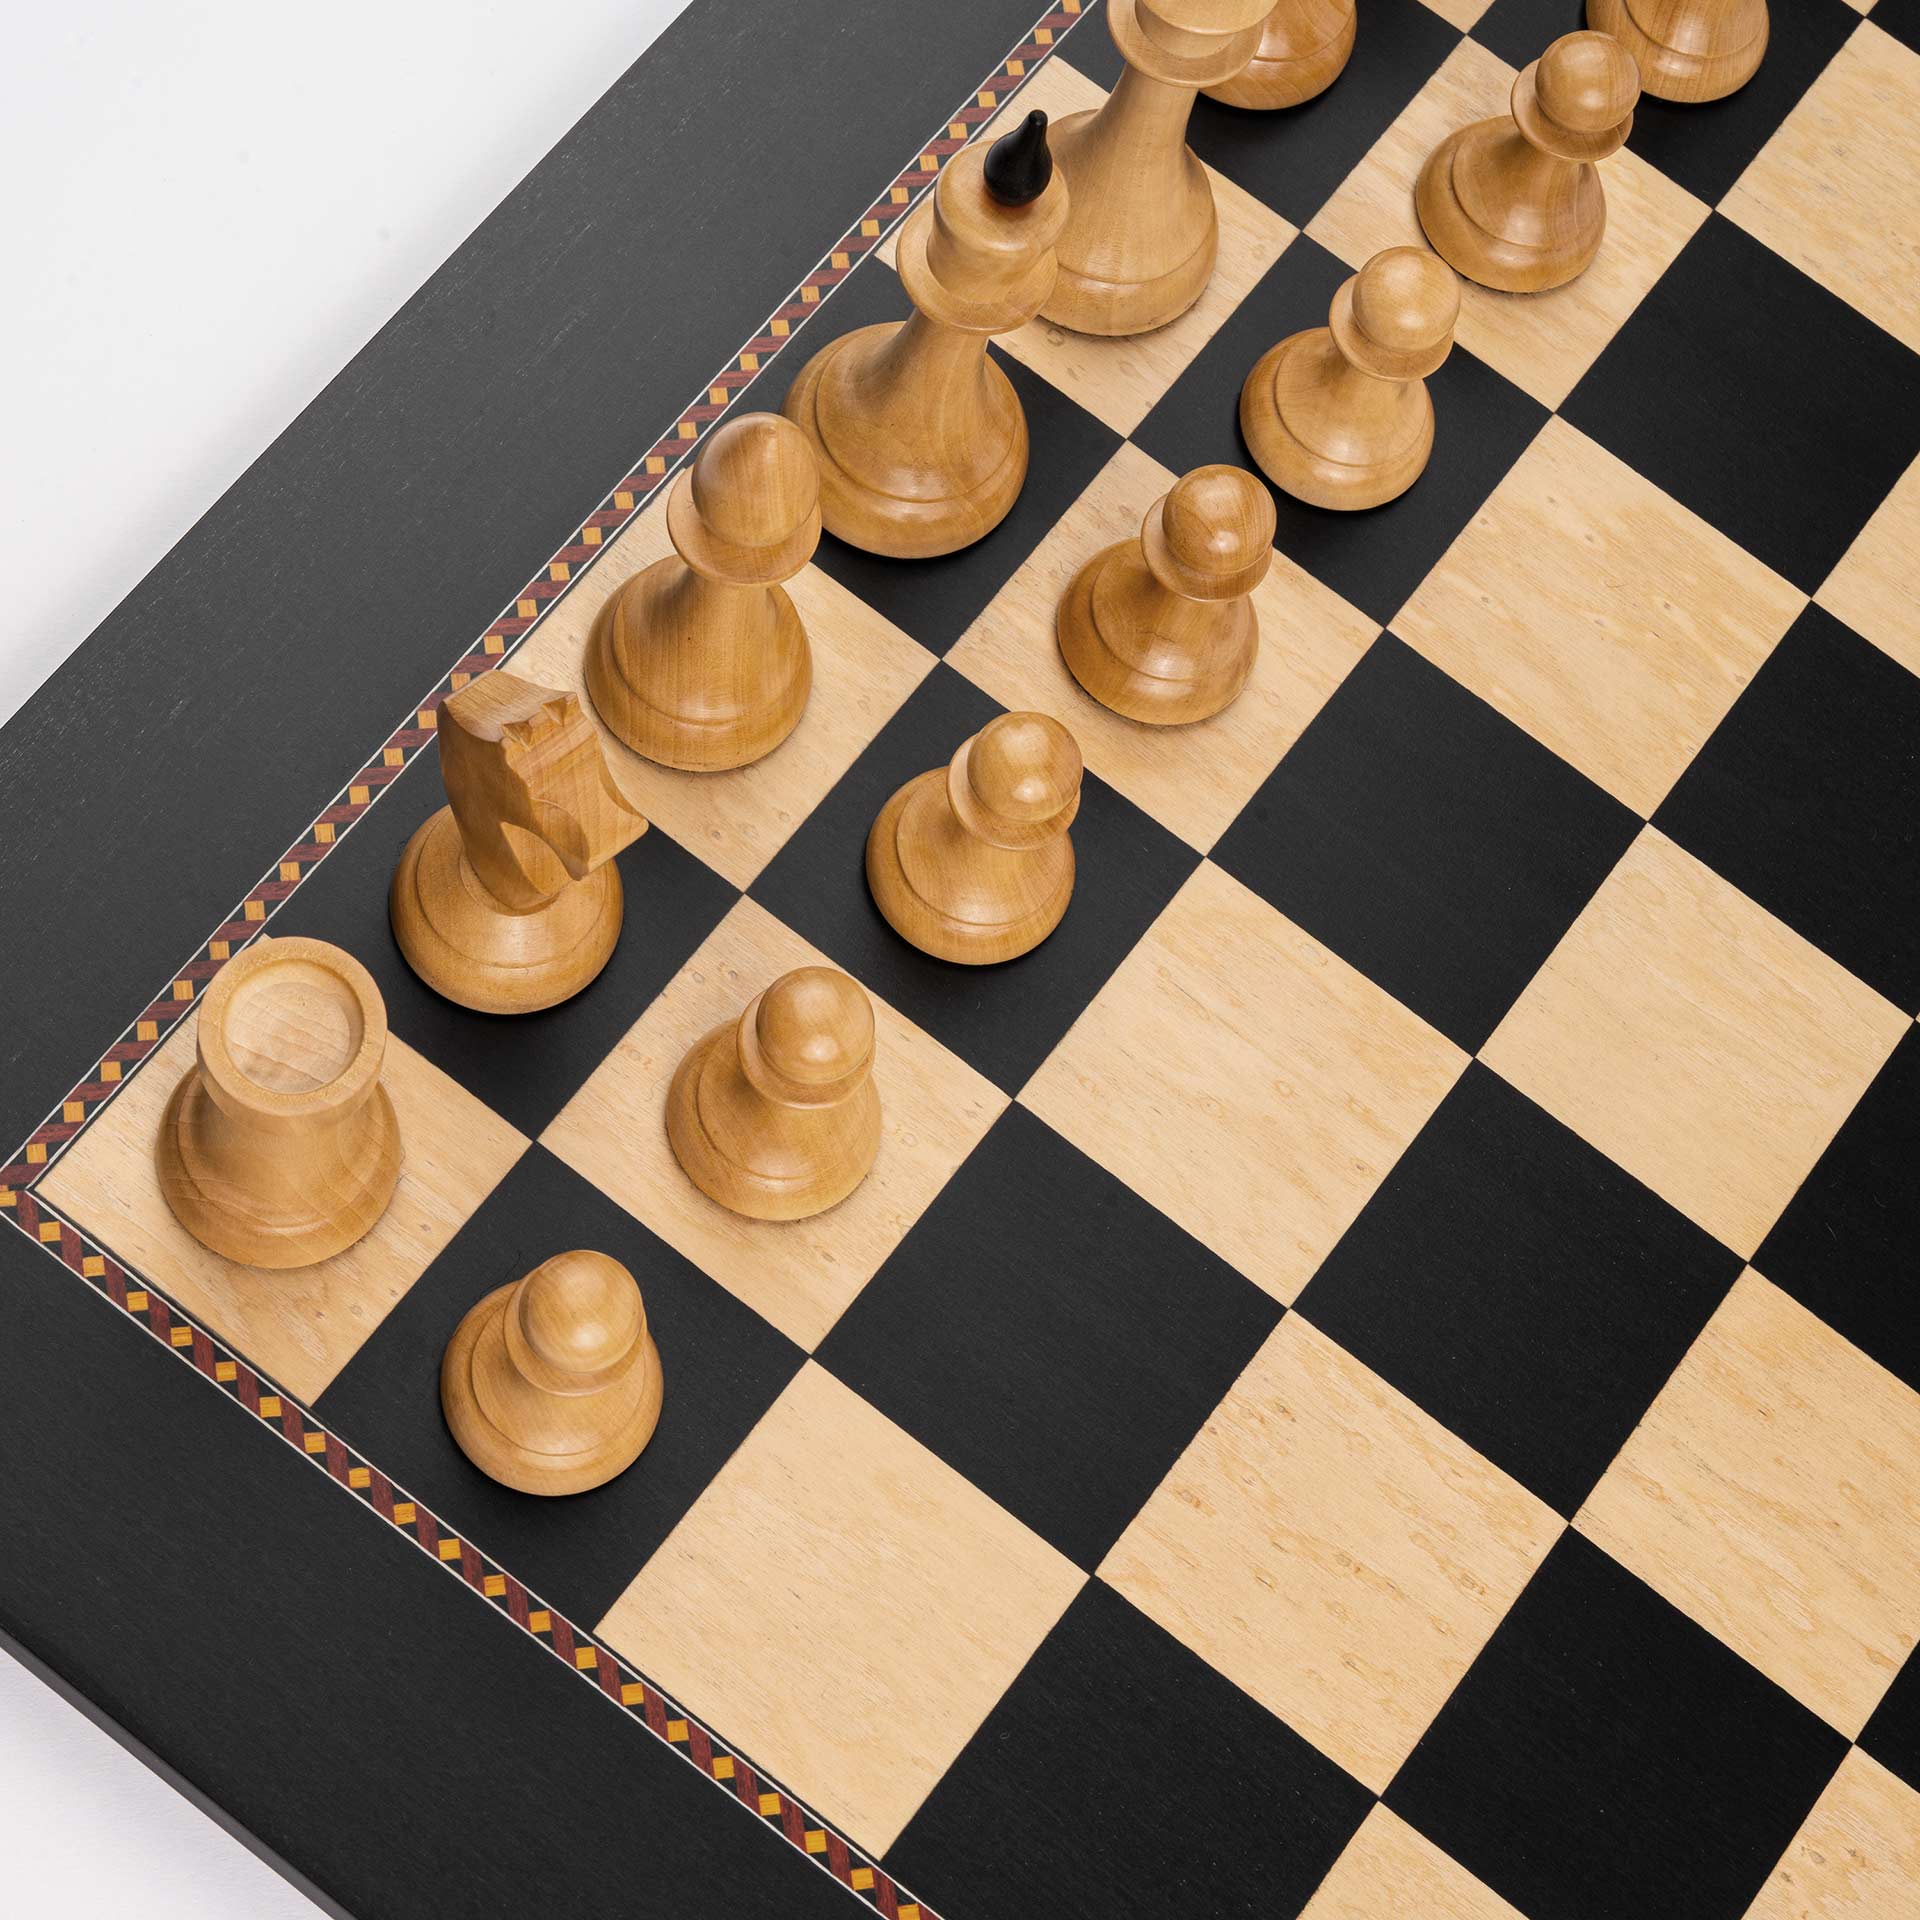 Chess Set Gambit Deluxe, field 50 mm